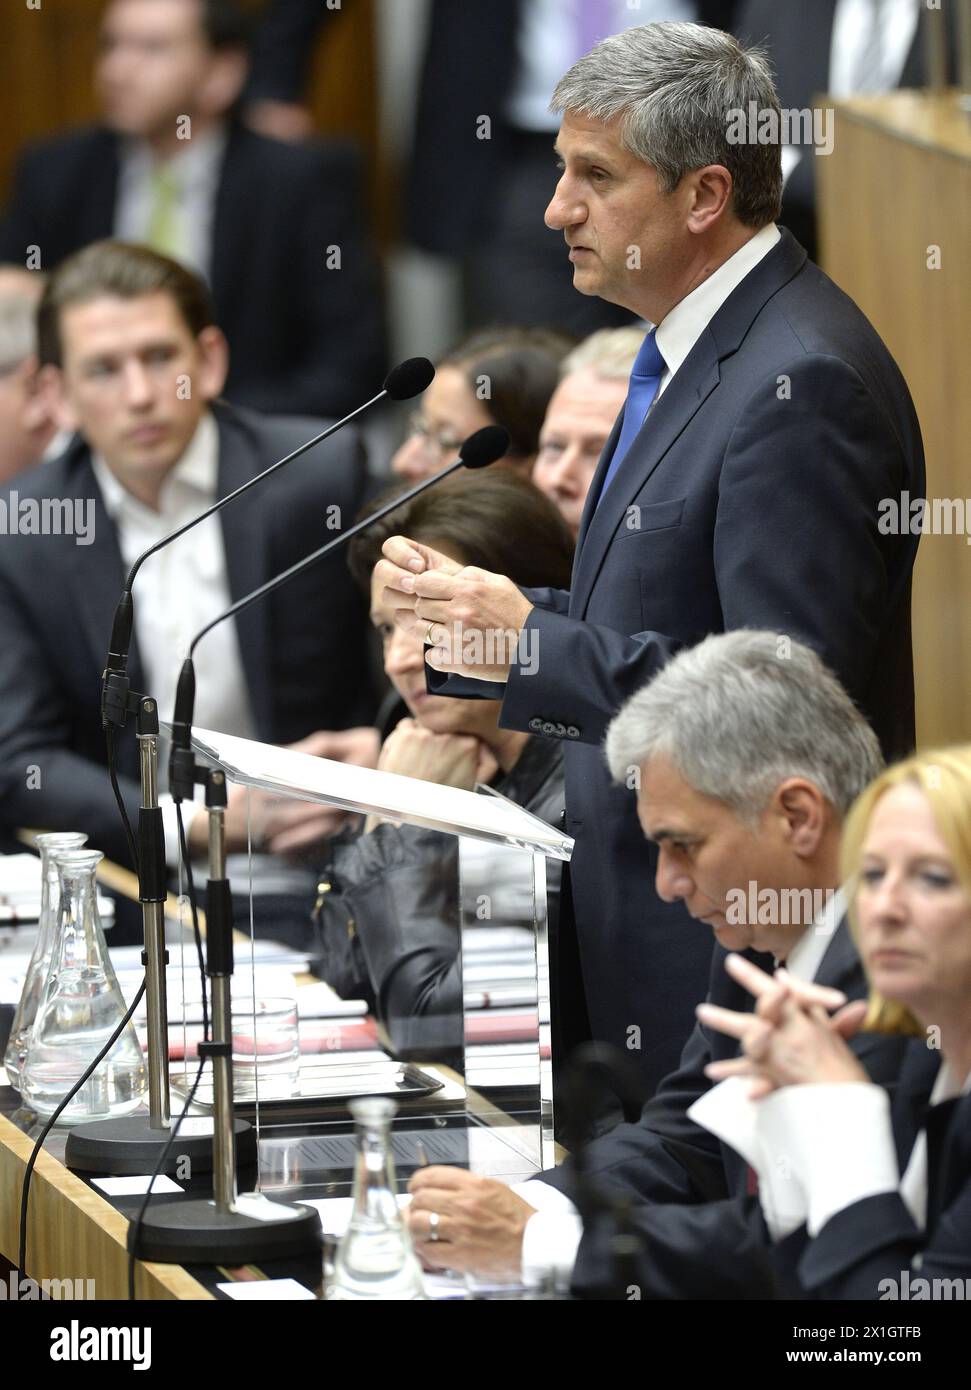 El ministro de Finanzas de Austria, Michael Spindelegger, pronunció su discurso sobre el presupuesto en una sesión de la Asamblea Nacional de Austria en el parlamento en Viena, Austria, el 29 de abril de 2014. - 20140429 PD0475 - Información de recarga: Derechos gestionados (RM) Foto de stock